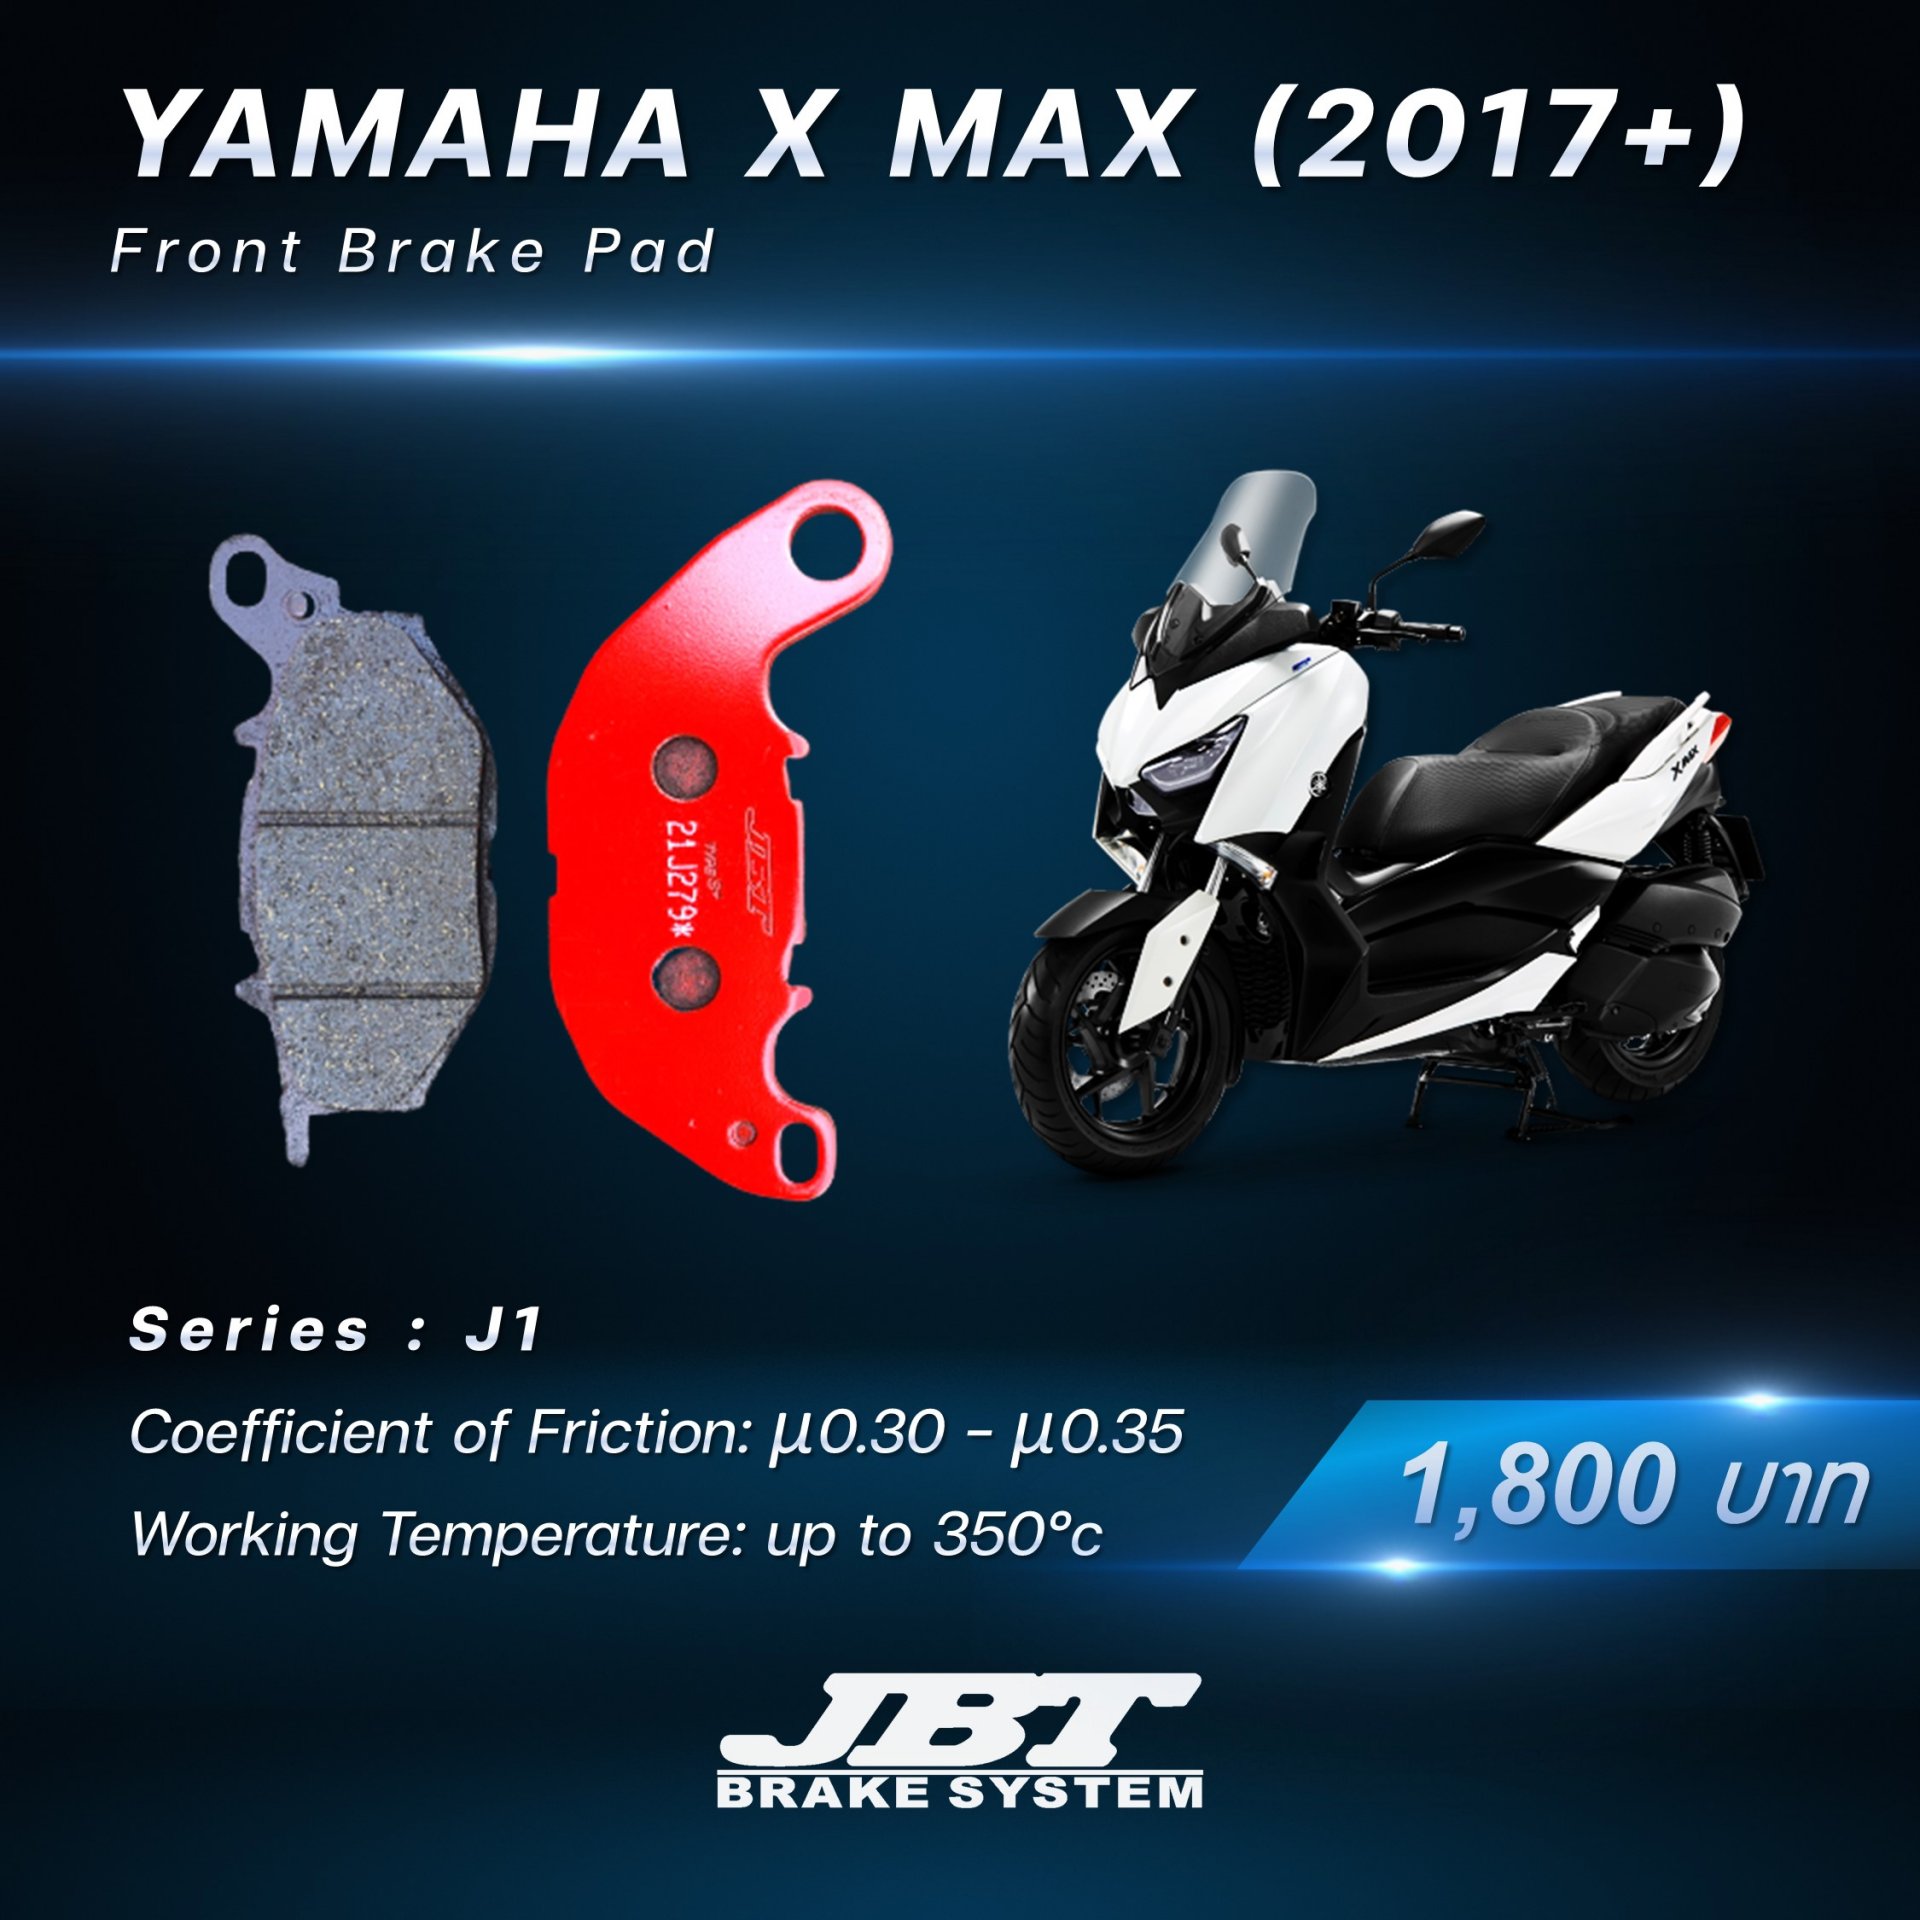 ผ้าเบรกหน้า Yamaha X Max